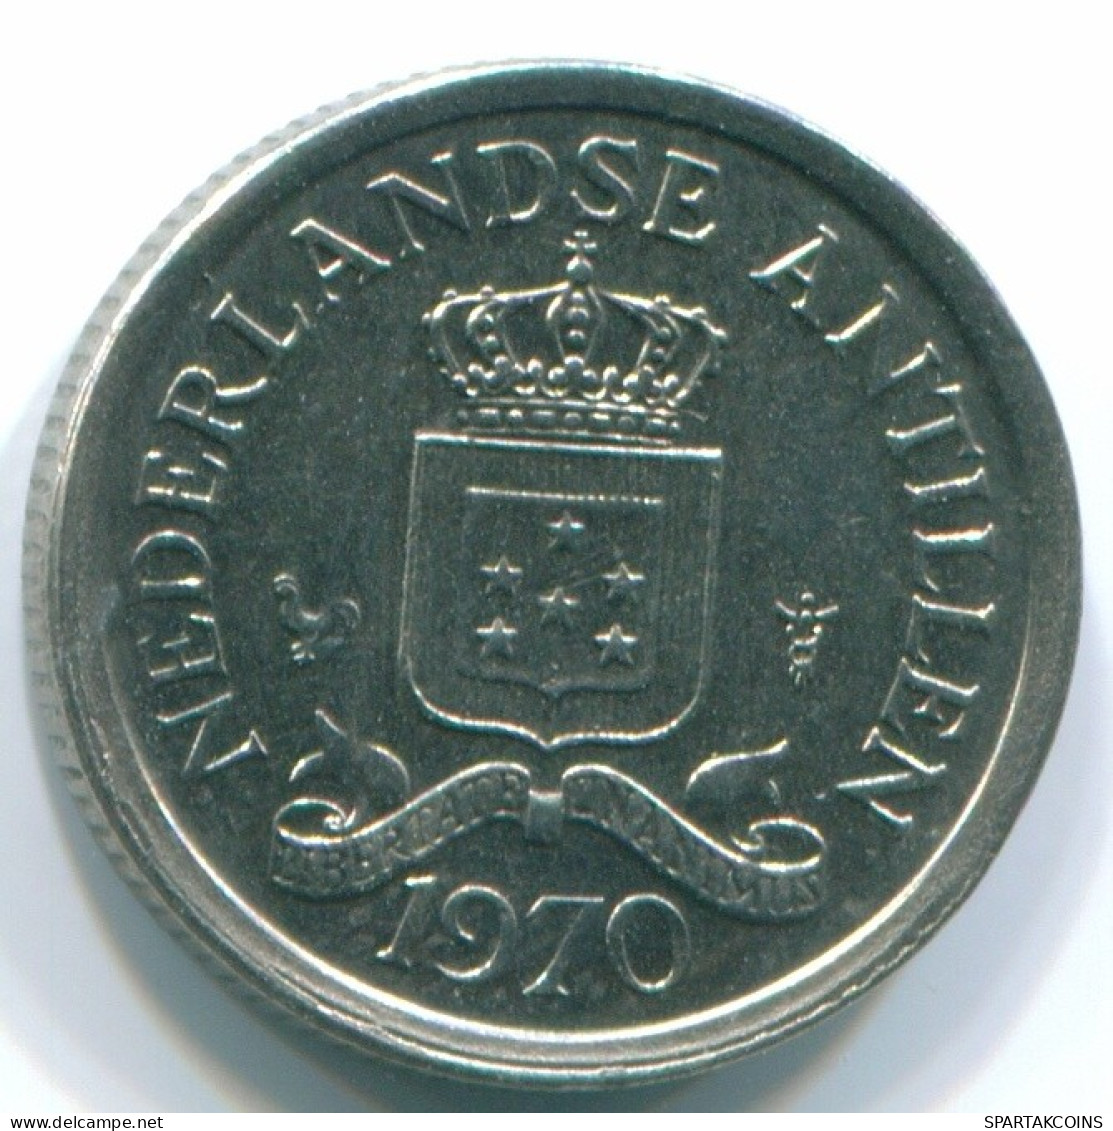 10 CENTS 1970 NIEDERLÄNDISCHE ANTILLEN Nickel Koloniale Münze #S13341.D.A - Niederländische Antillen